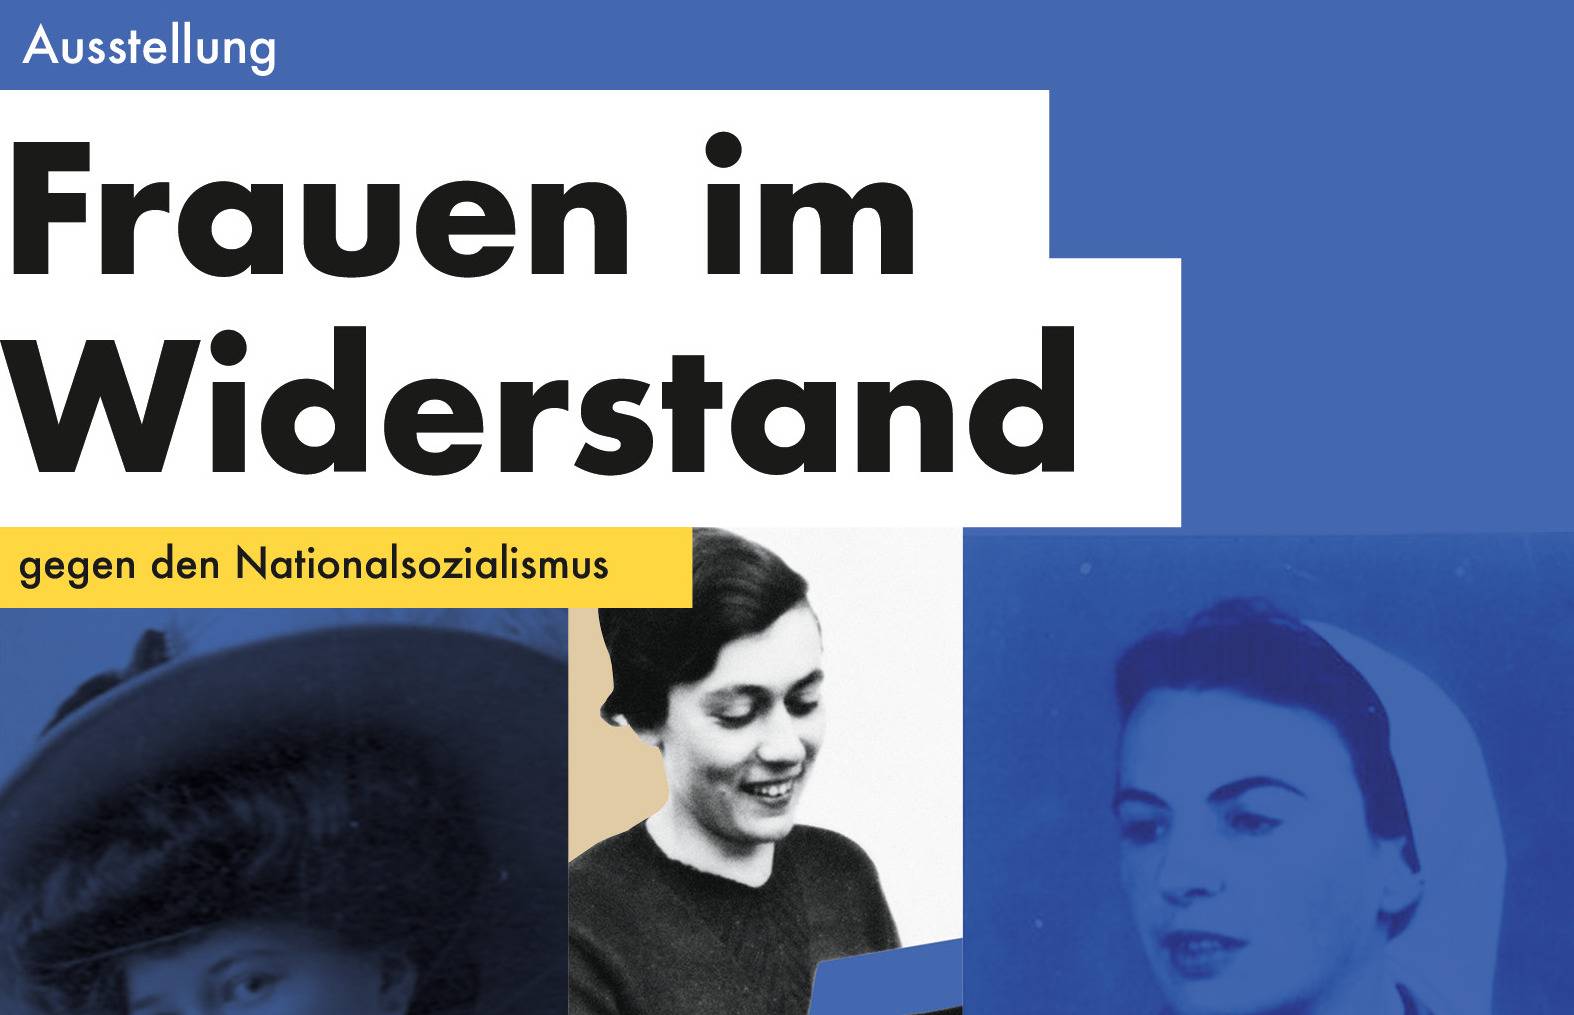 Ausstellung: Frauen im Widerstand gegen den Nationalsozialismus